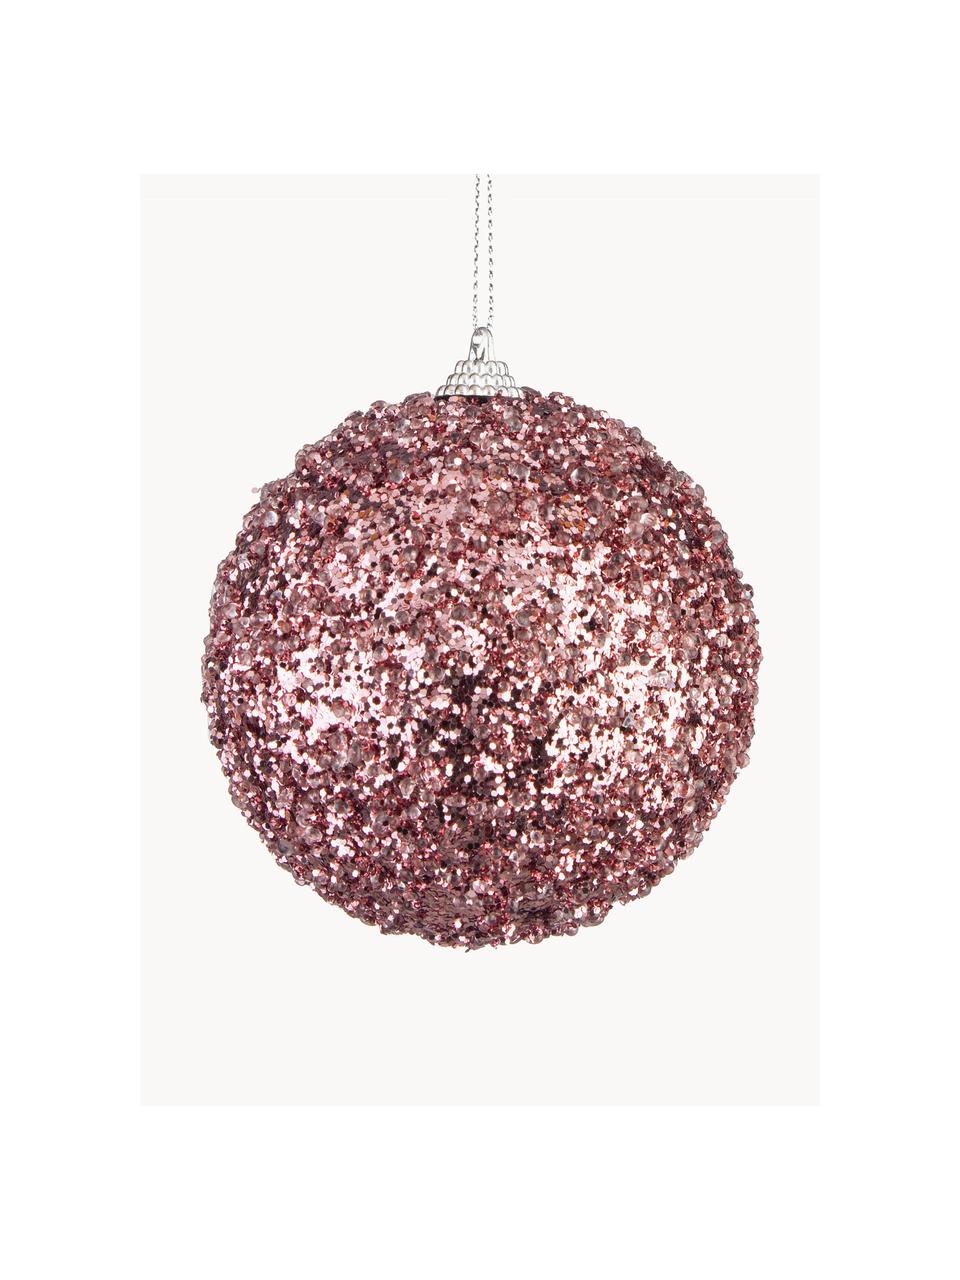 Kerstballen Christie, 4 stuks, Polyschuim, Roze, Ø 10 cm